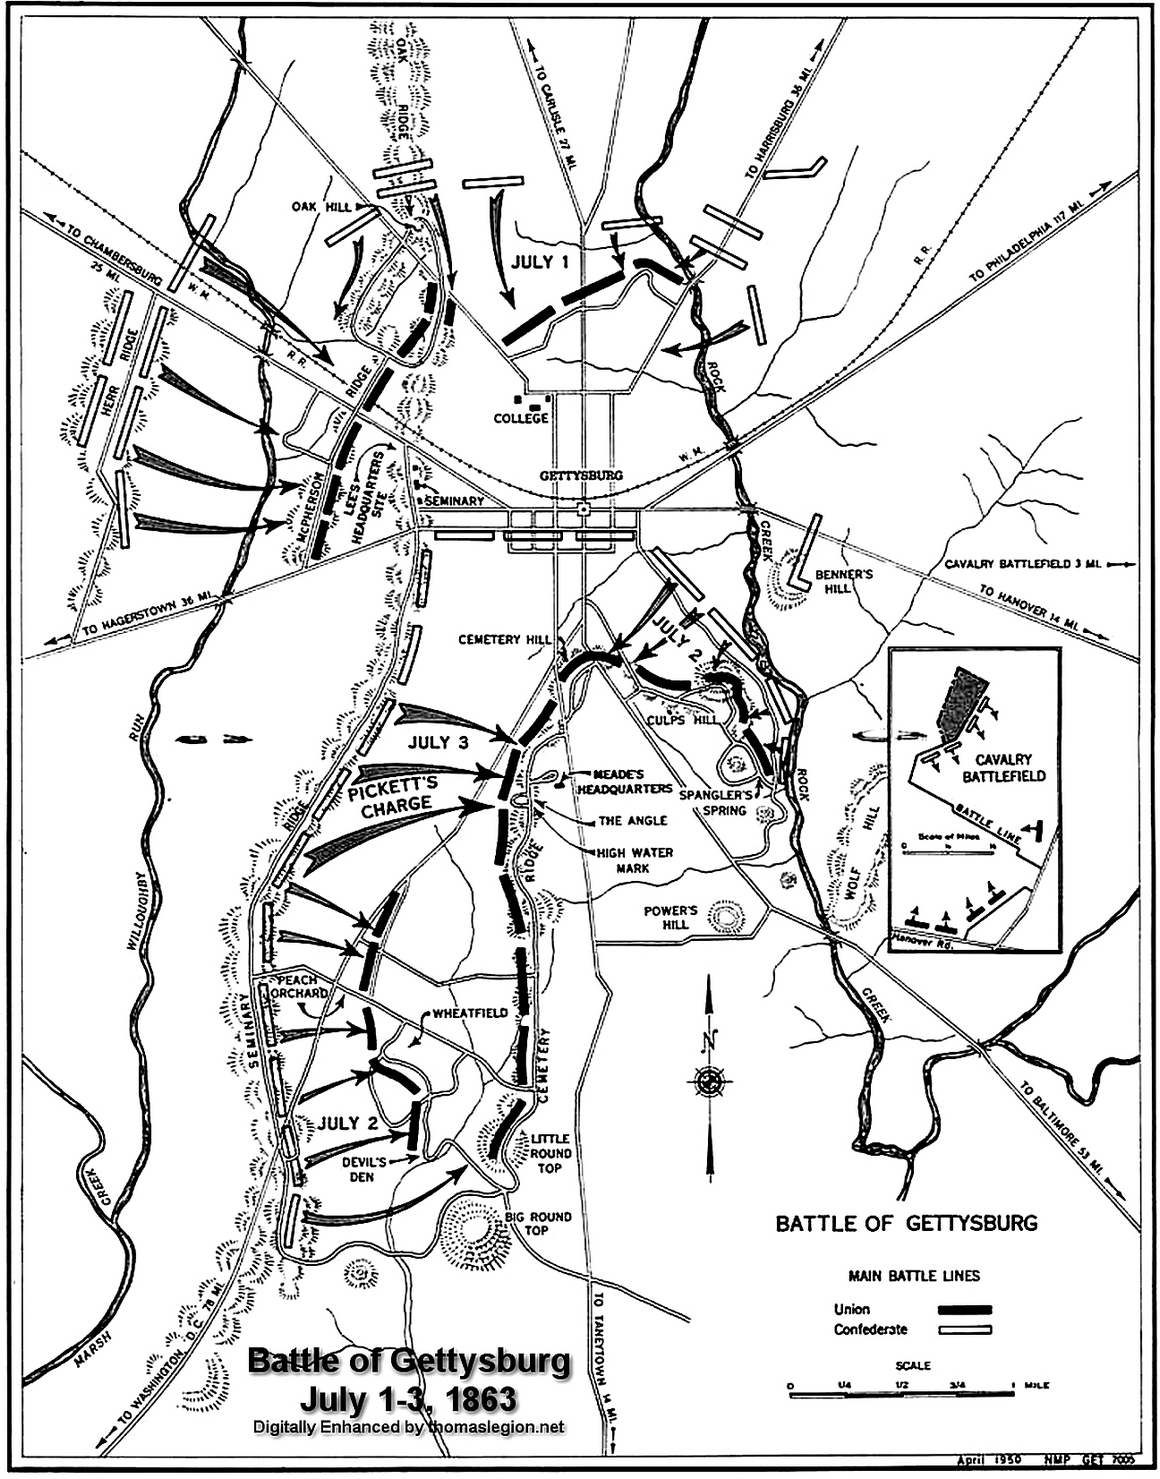 Official Spangler's Spring Gettysburg Map.jpg